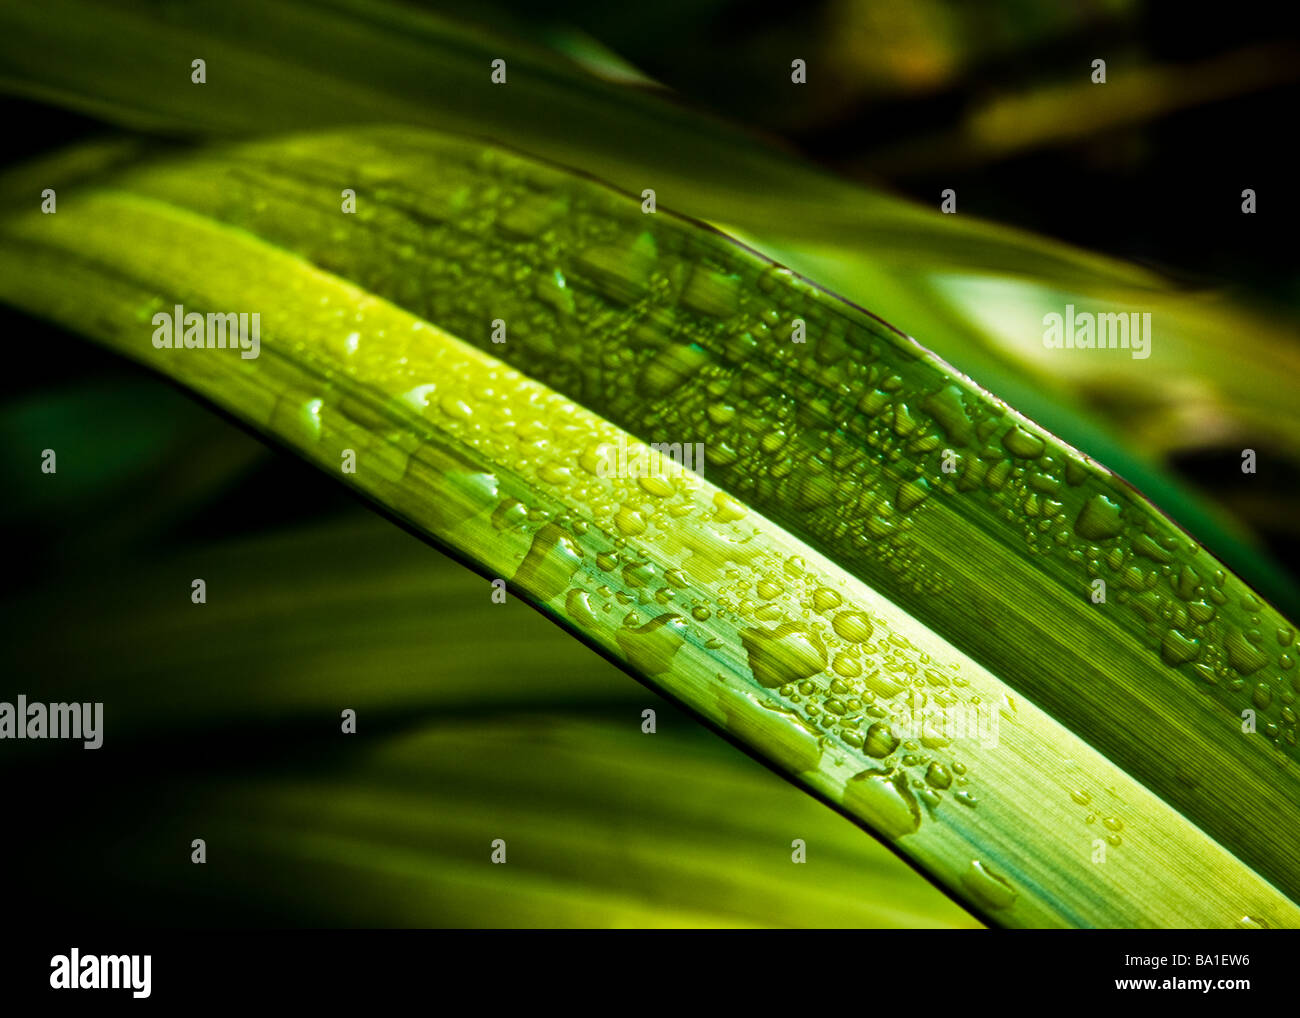 Close up de feuillage vert avec des gouttelettes d'eau, selective focus Banque D'Images